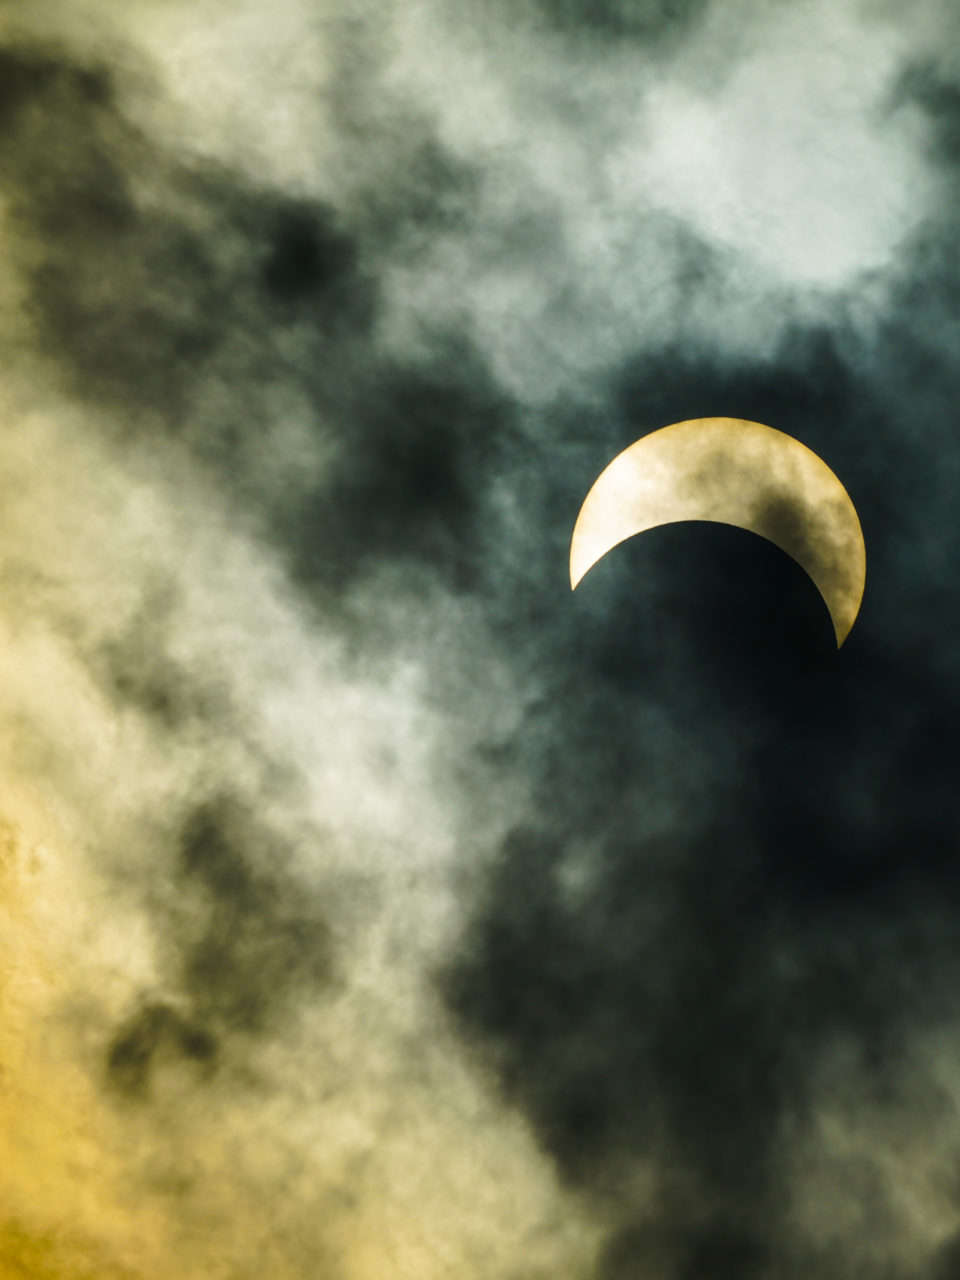 https://www.planetavenue.com/wp-content/uploads/2020/06/éclipse2-960x1280.jpeg